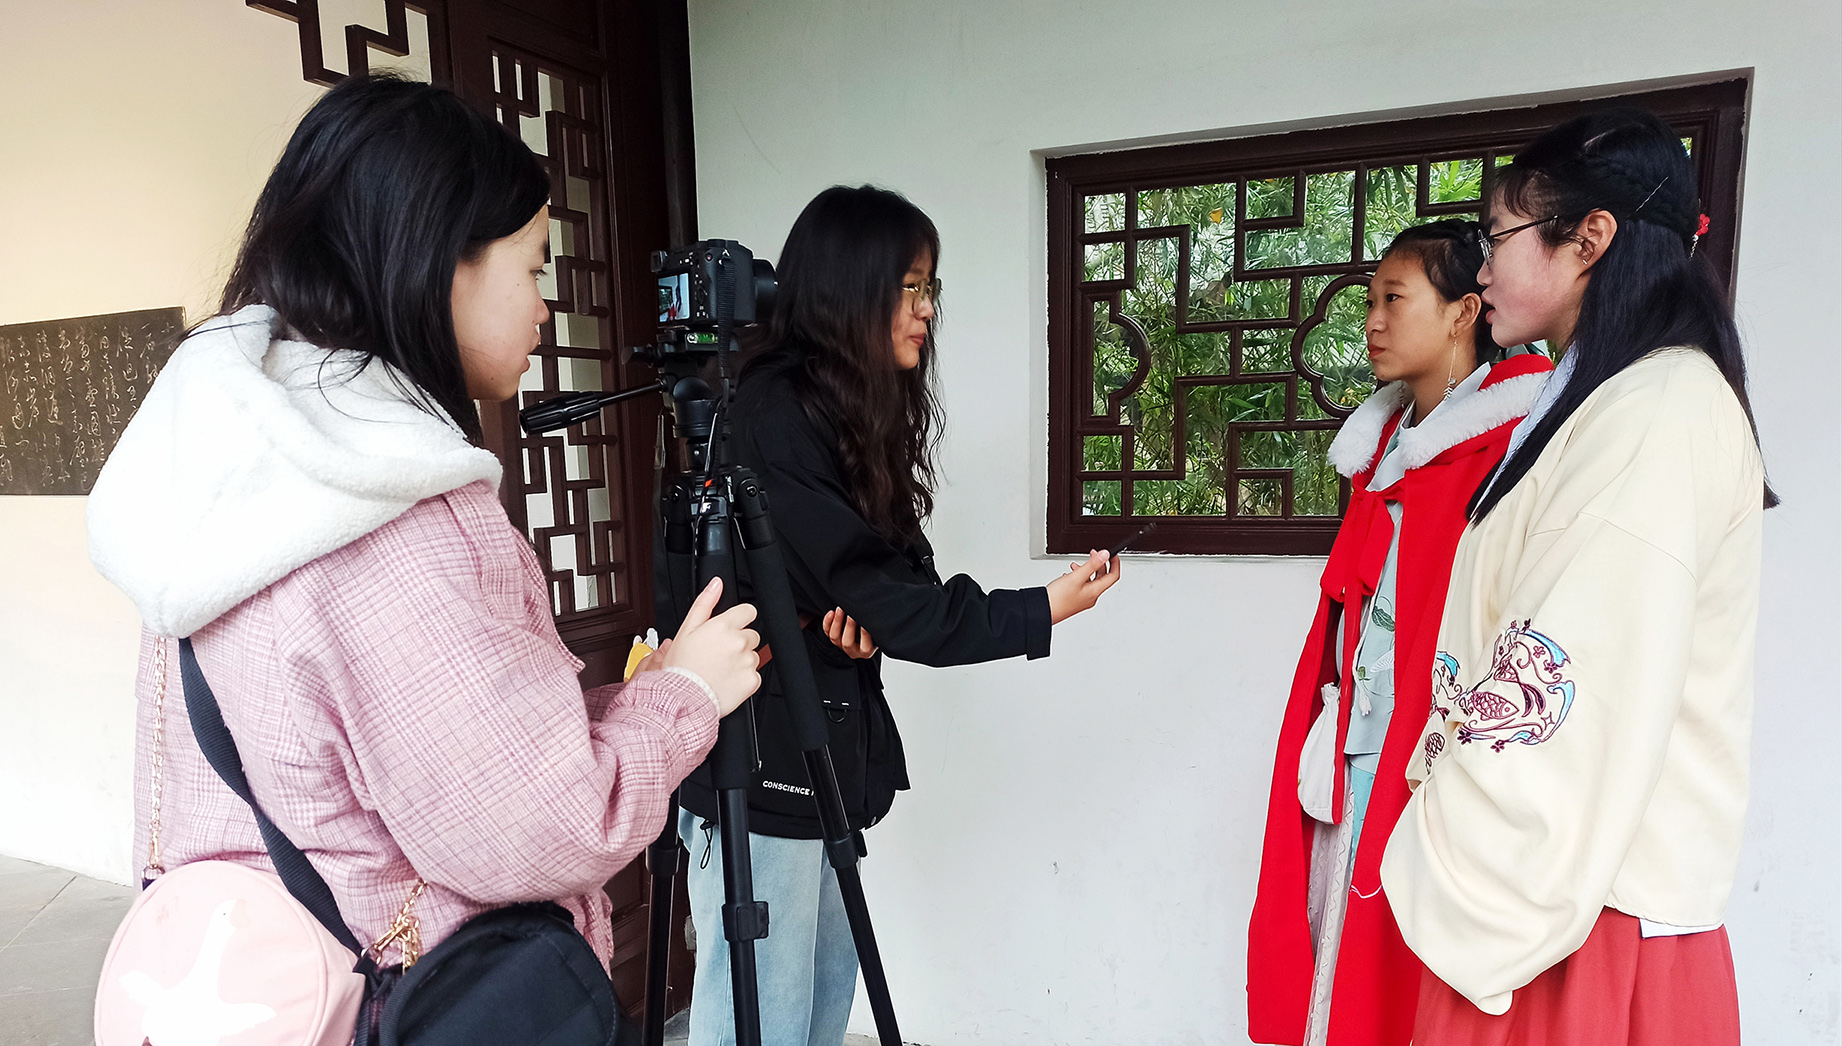 实践队员采访两名穿汉服的游客。四川文化网通讯员 都娅 摄.jpg